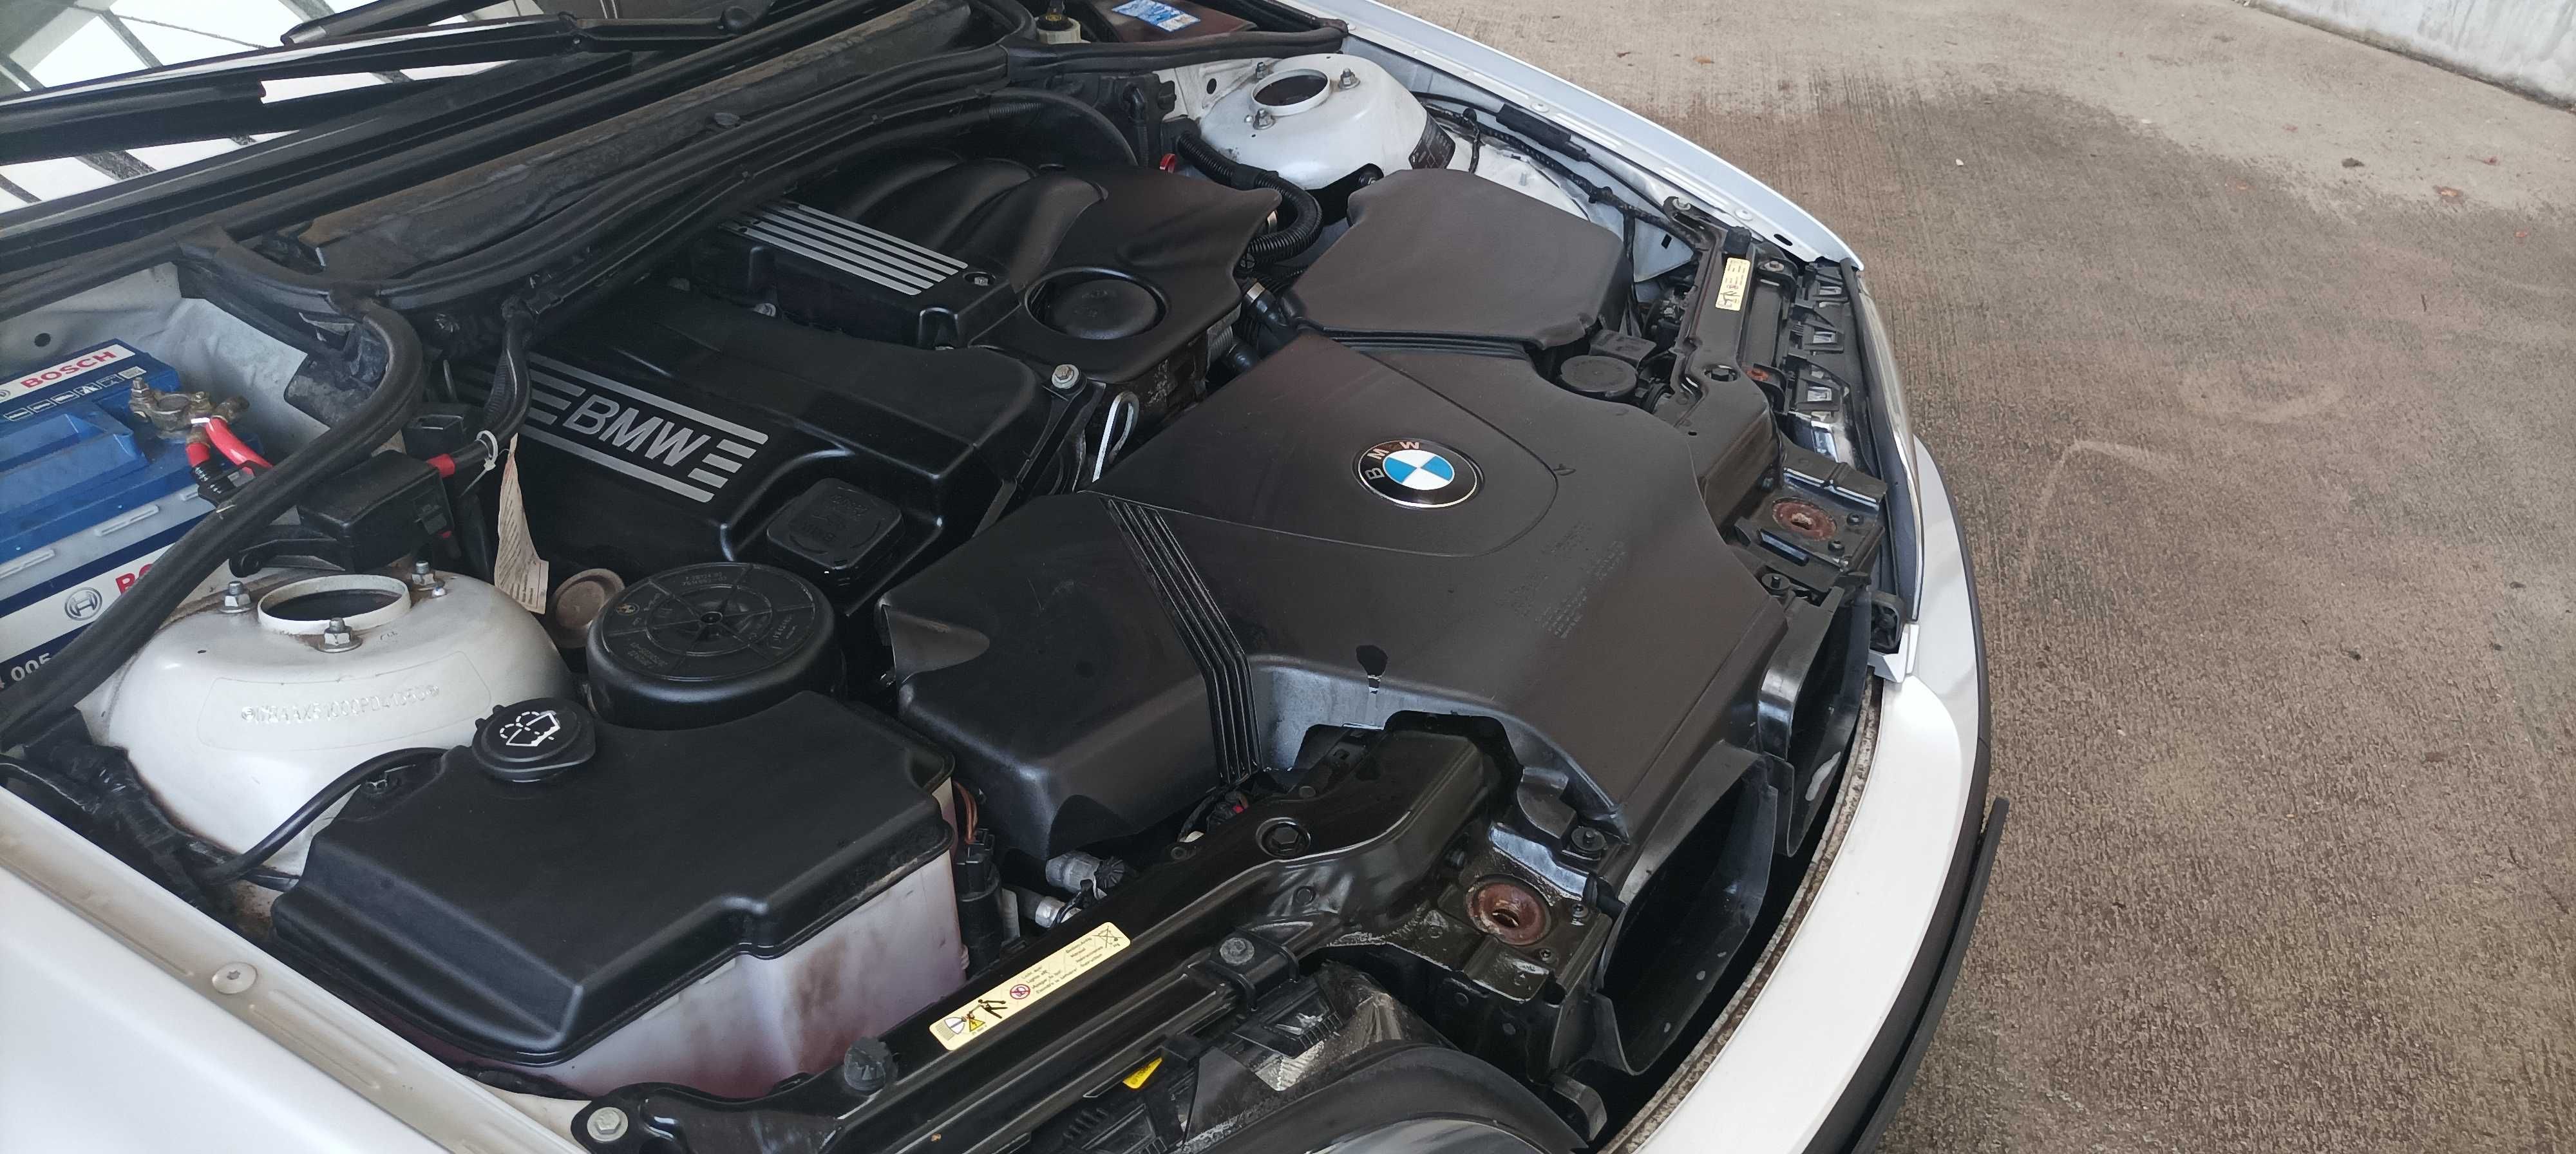 BMW E46 318i 2,0 kombi zadbane bez napraw